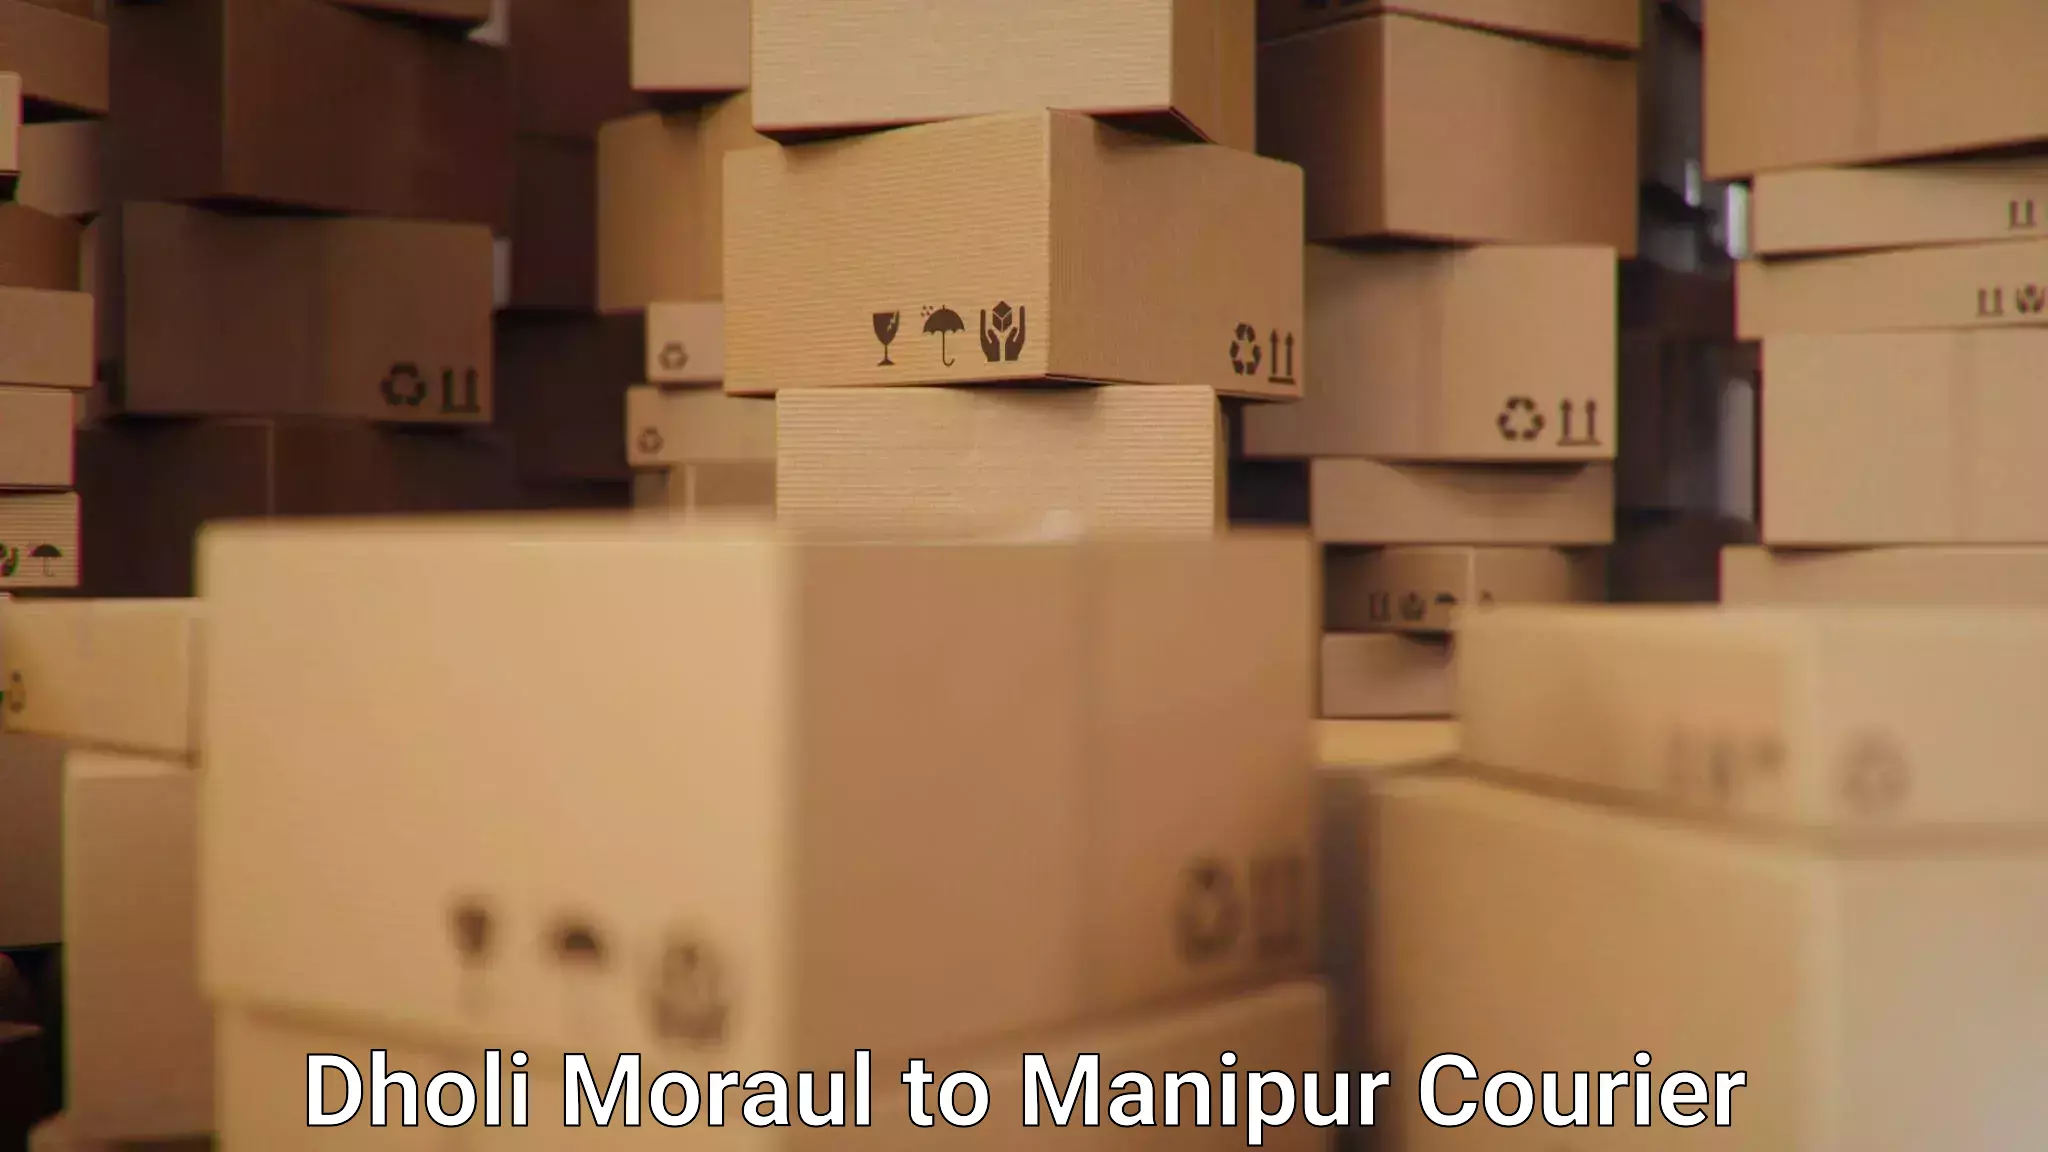 24/7 courier service Dholi Moraul to Senapati